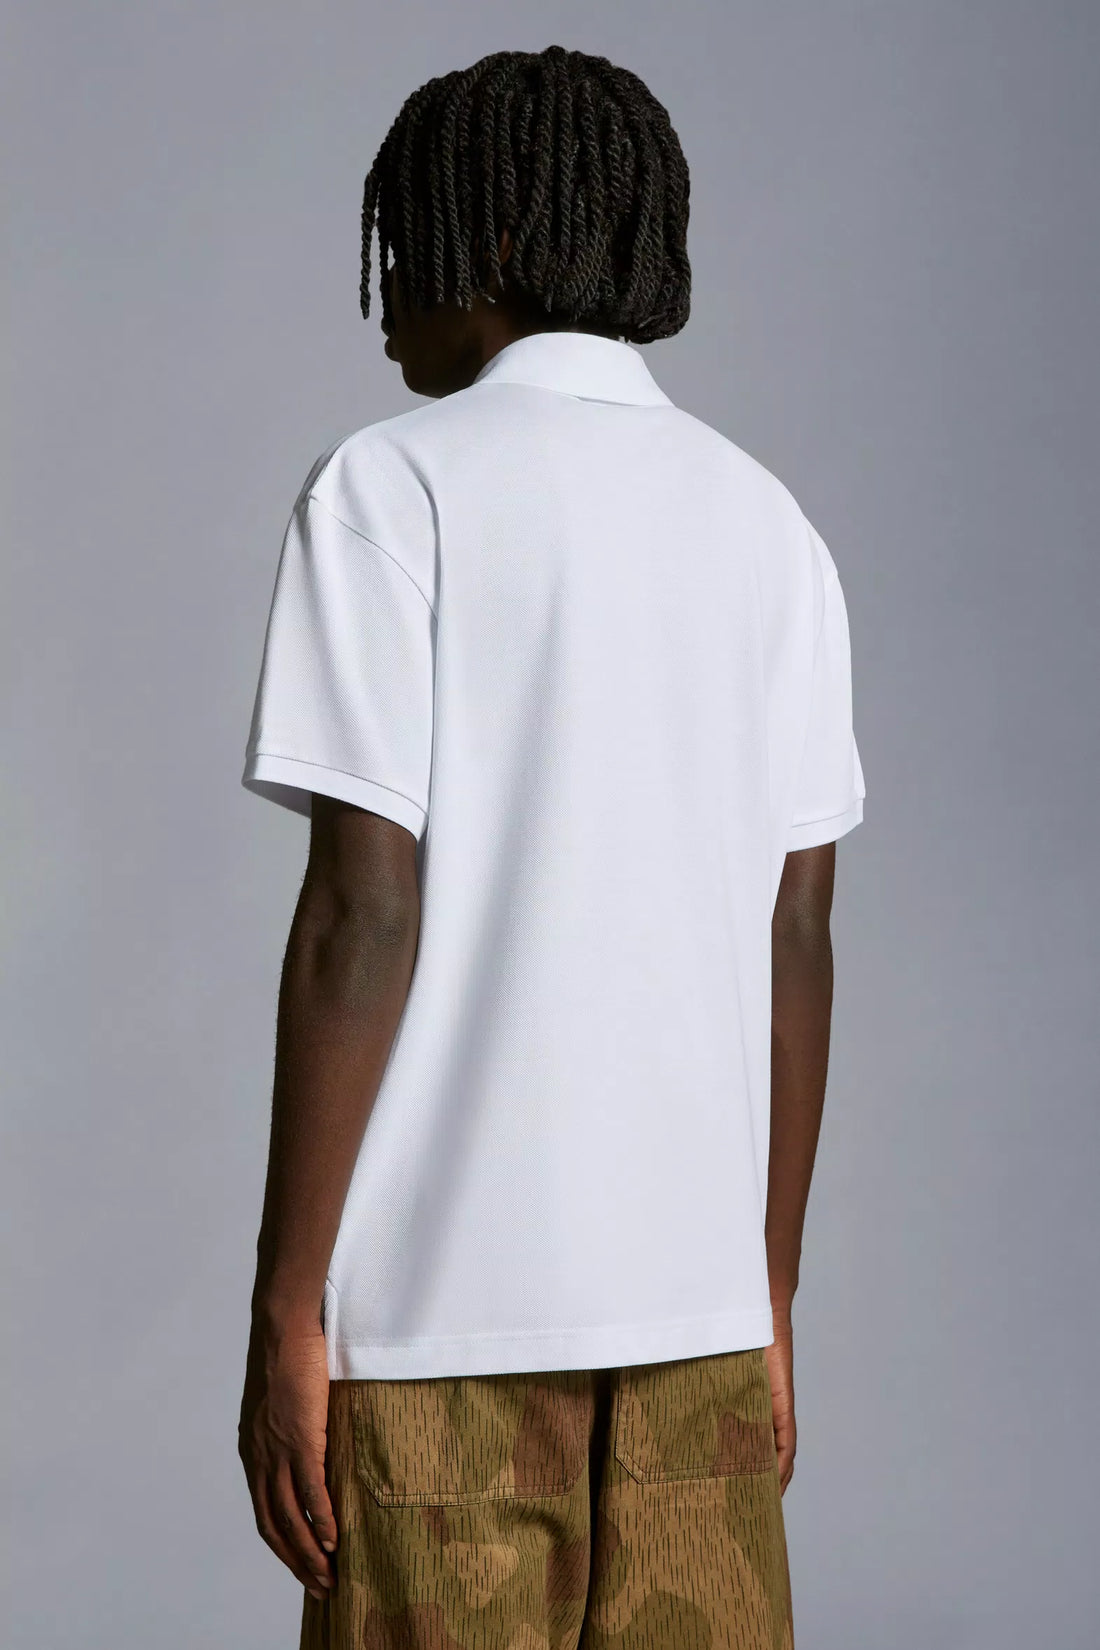 MONCLER GENIUS X 8 MONCLER PALM ANGELS MEN Logo Patch Polo Shirt White - MAISONDEFASHION.COM